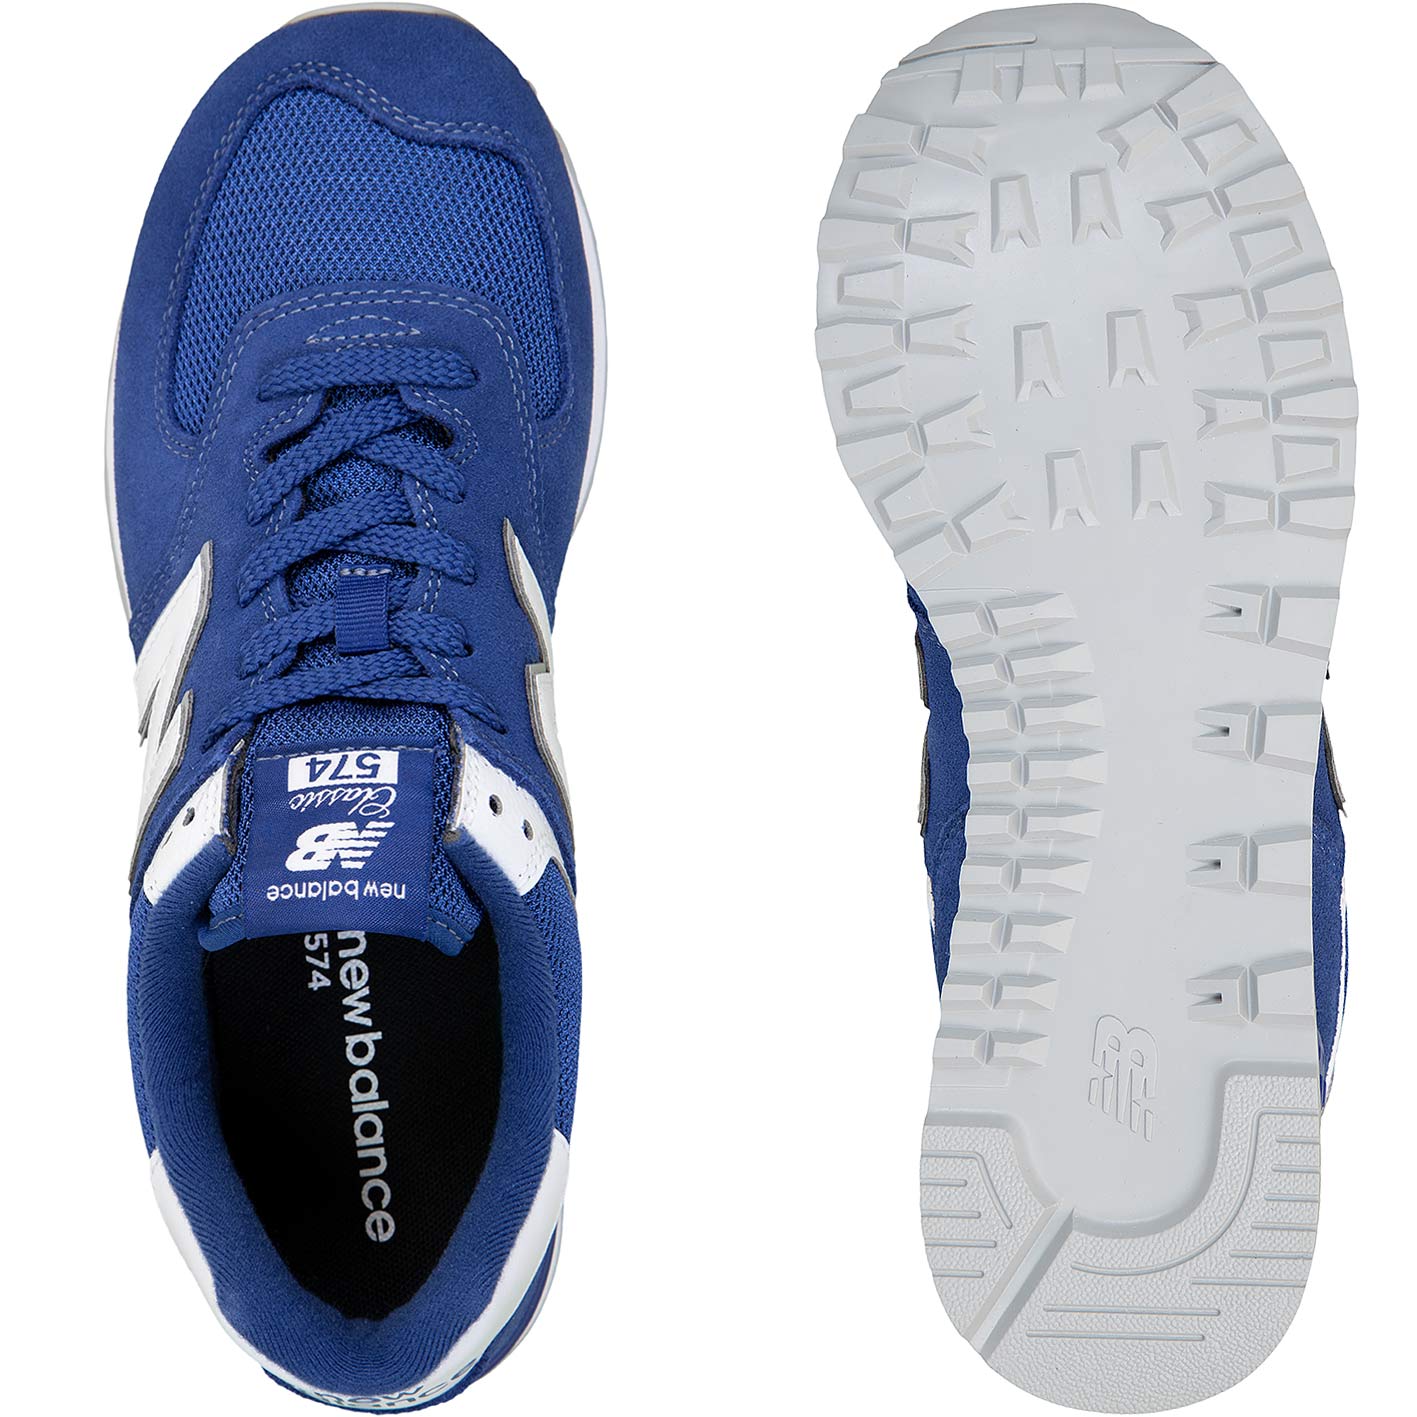 ☆ New Balance NB 574 Sneaker Schuhe blau - hier bestellen!